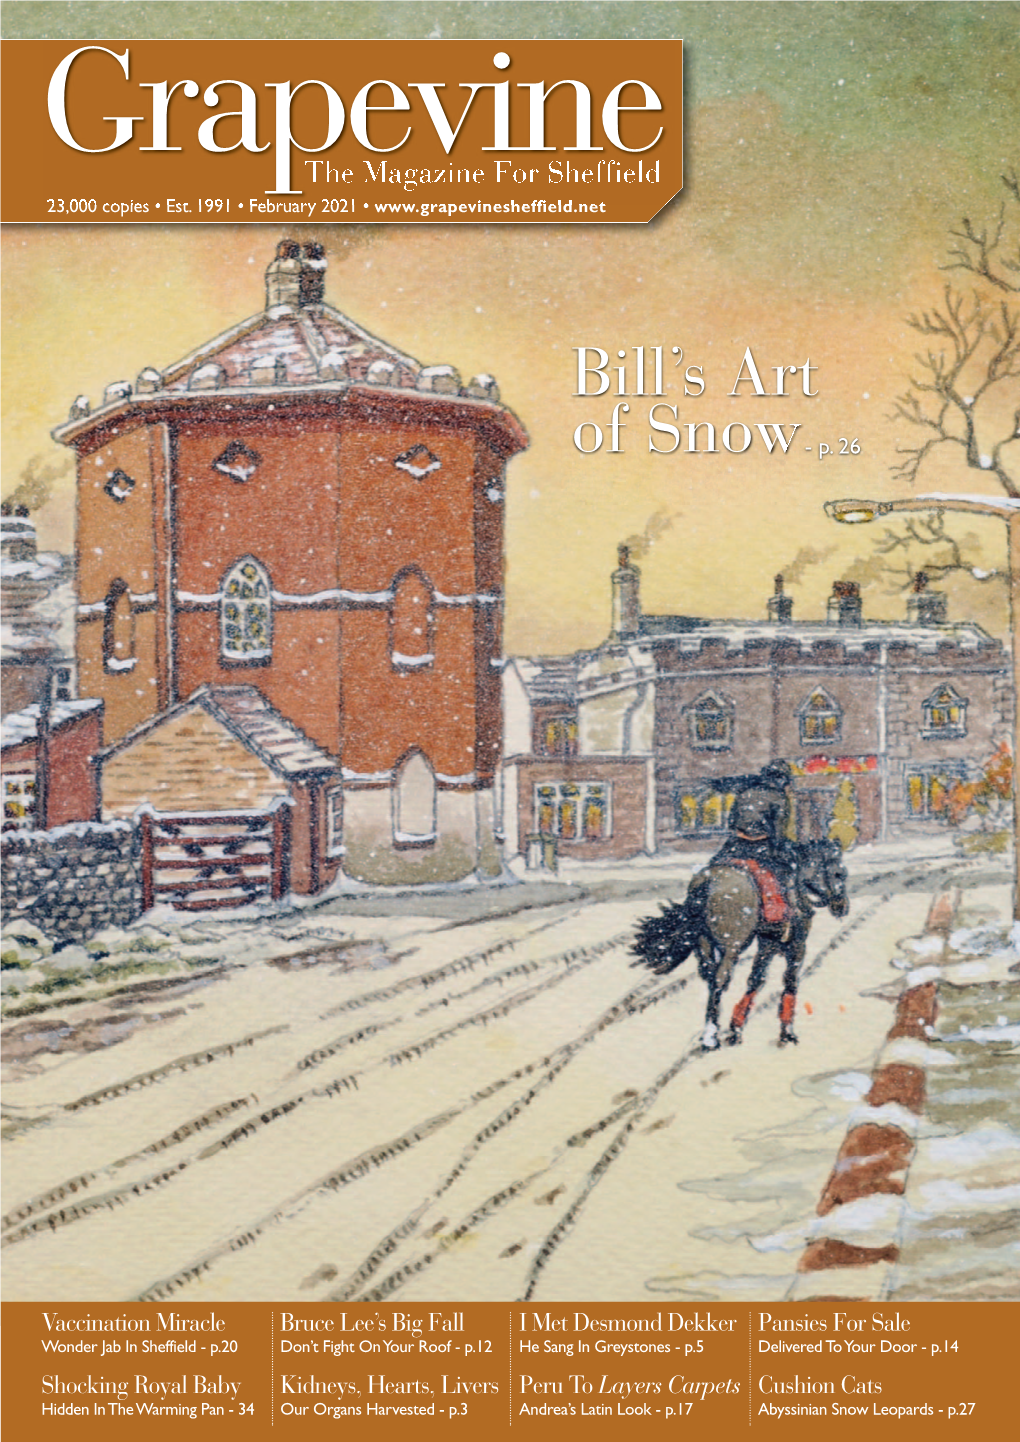 Bill's Art of Snow- P. 26